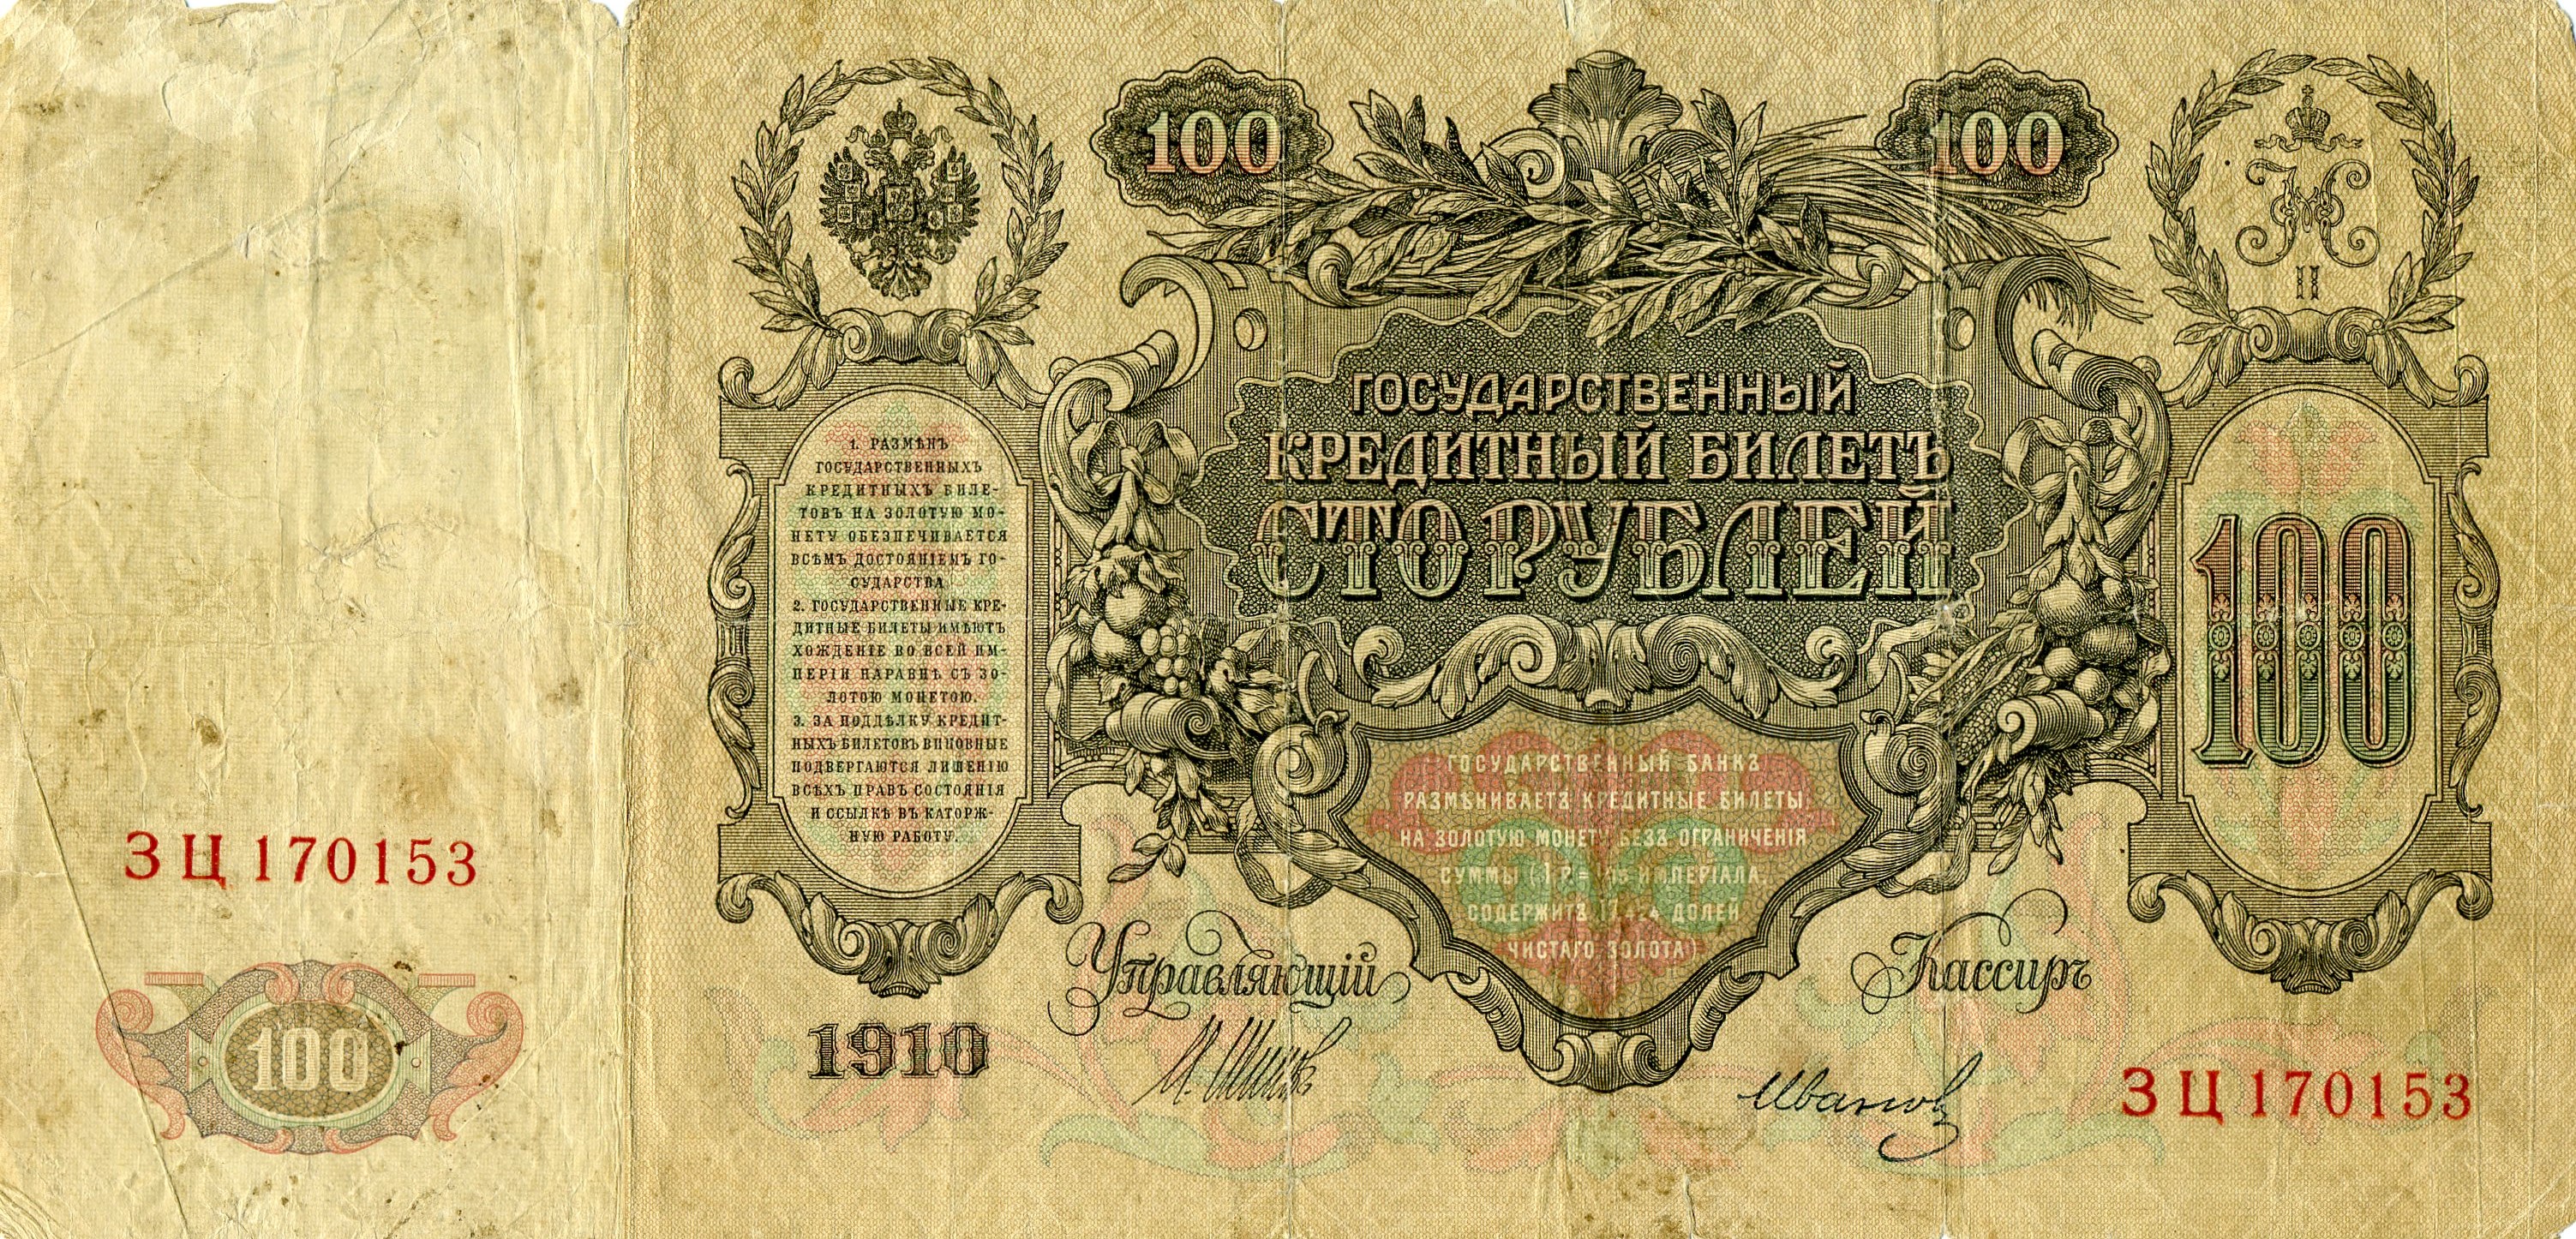 100 рублей 1910 года. Екатерина II. Реверс. Реферат Рефератович.